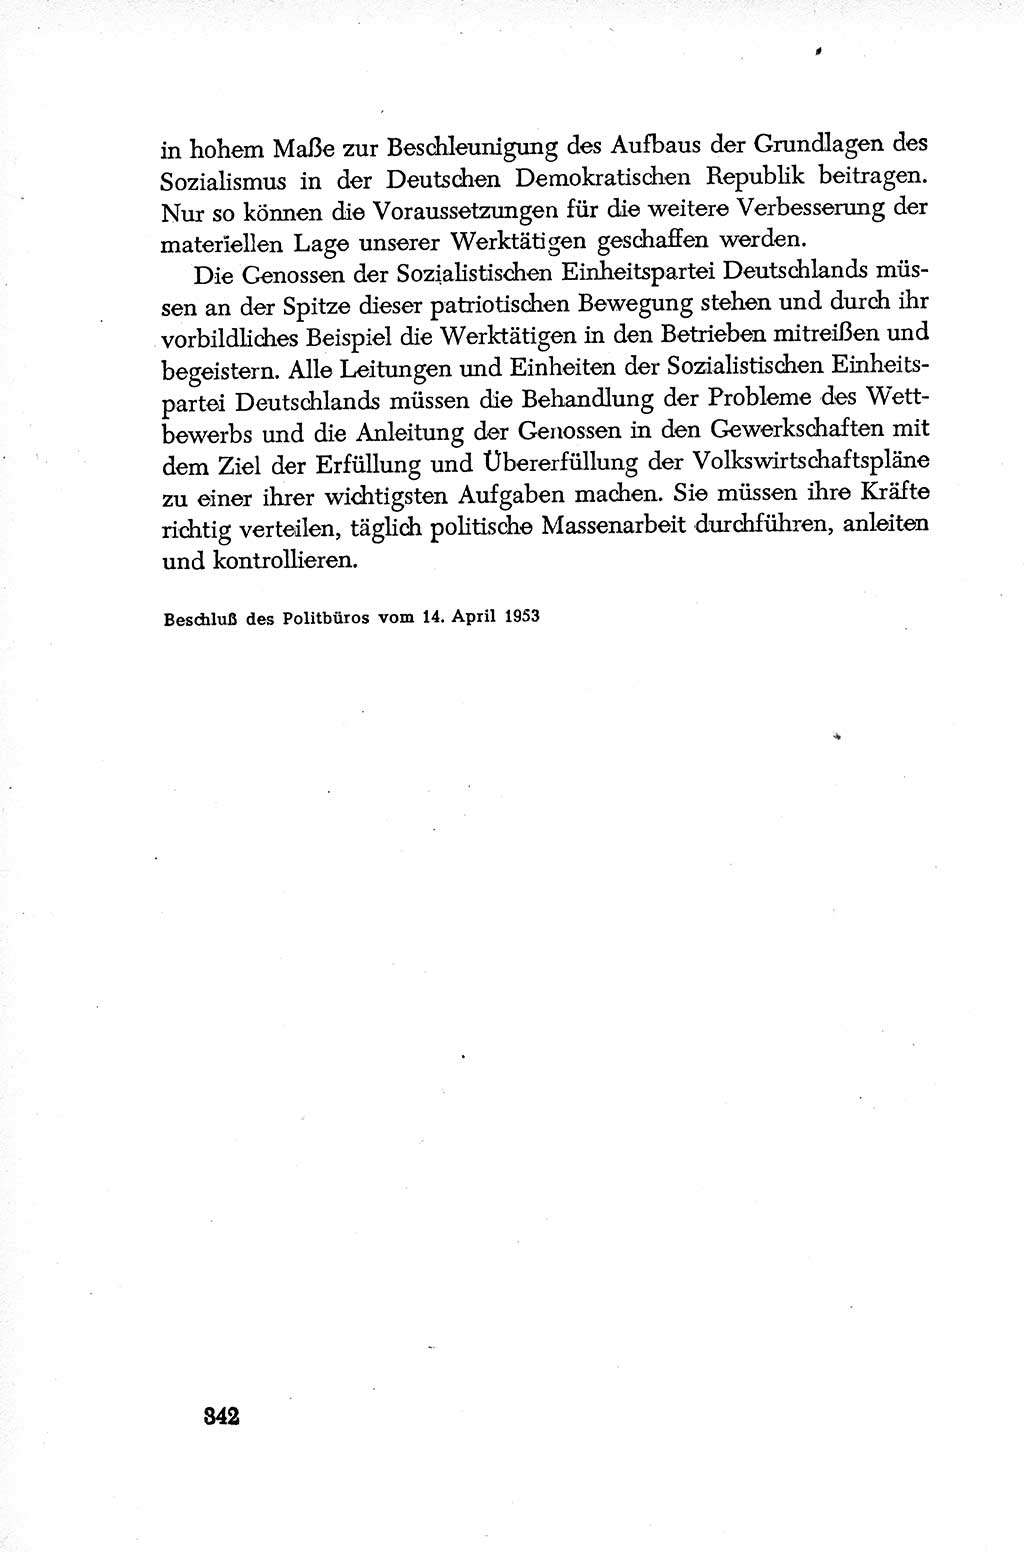 Dokumente der Sozialistischen Einheitspartei Deutschlands (SED) [Deutsche Demokratische Republik (DDR)] 1952-1953, Seite 342 (Dok. SED DDR 1952-1953, S. 342)